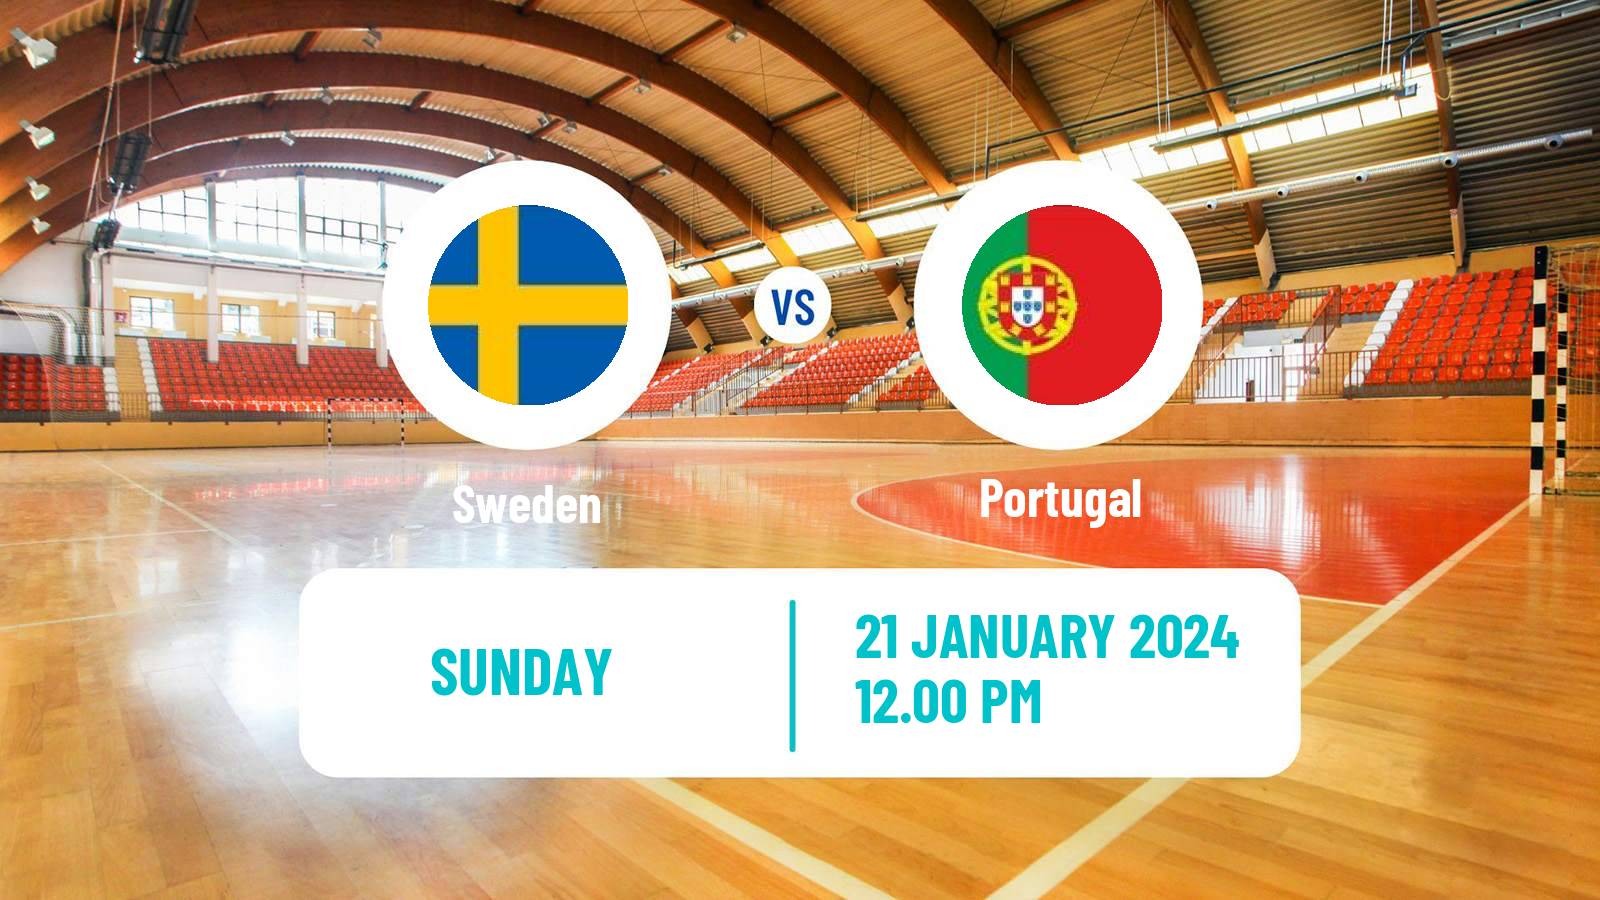 Handball Handball European Championship Sweden - Portugal